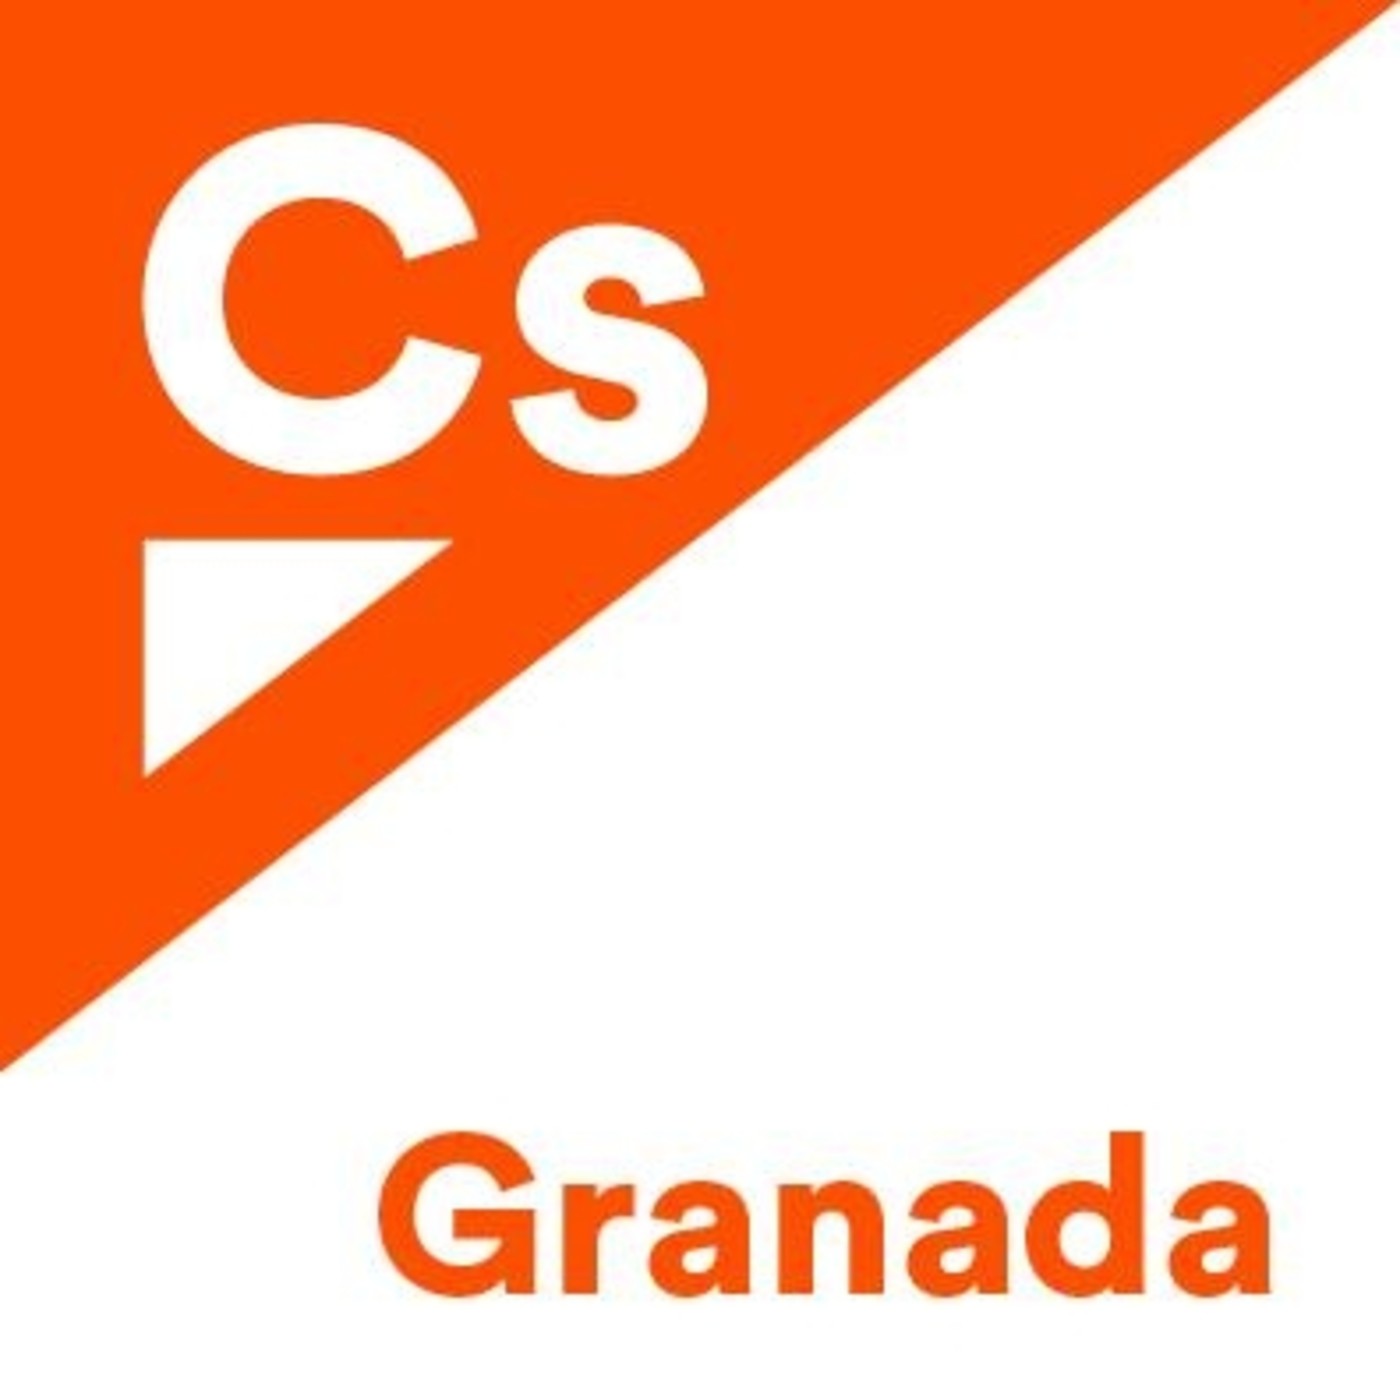 Entrevista a Manuel Olivares en EsRadio Granada